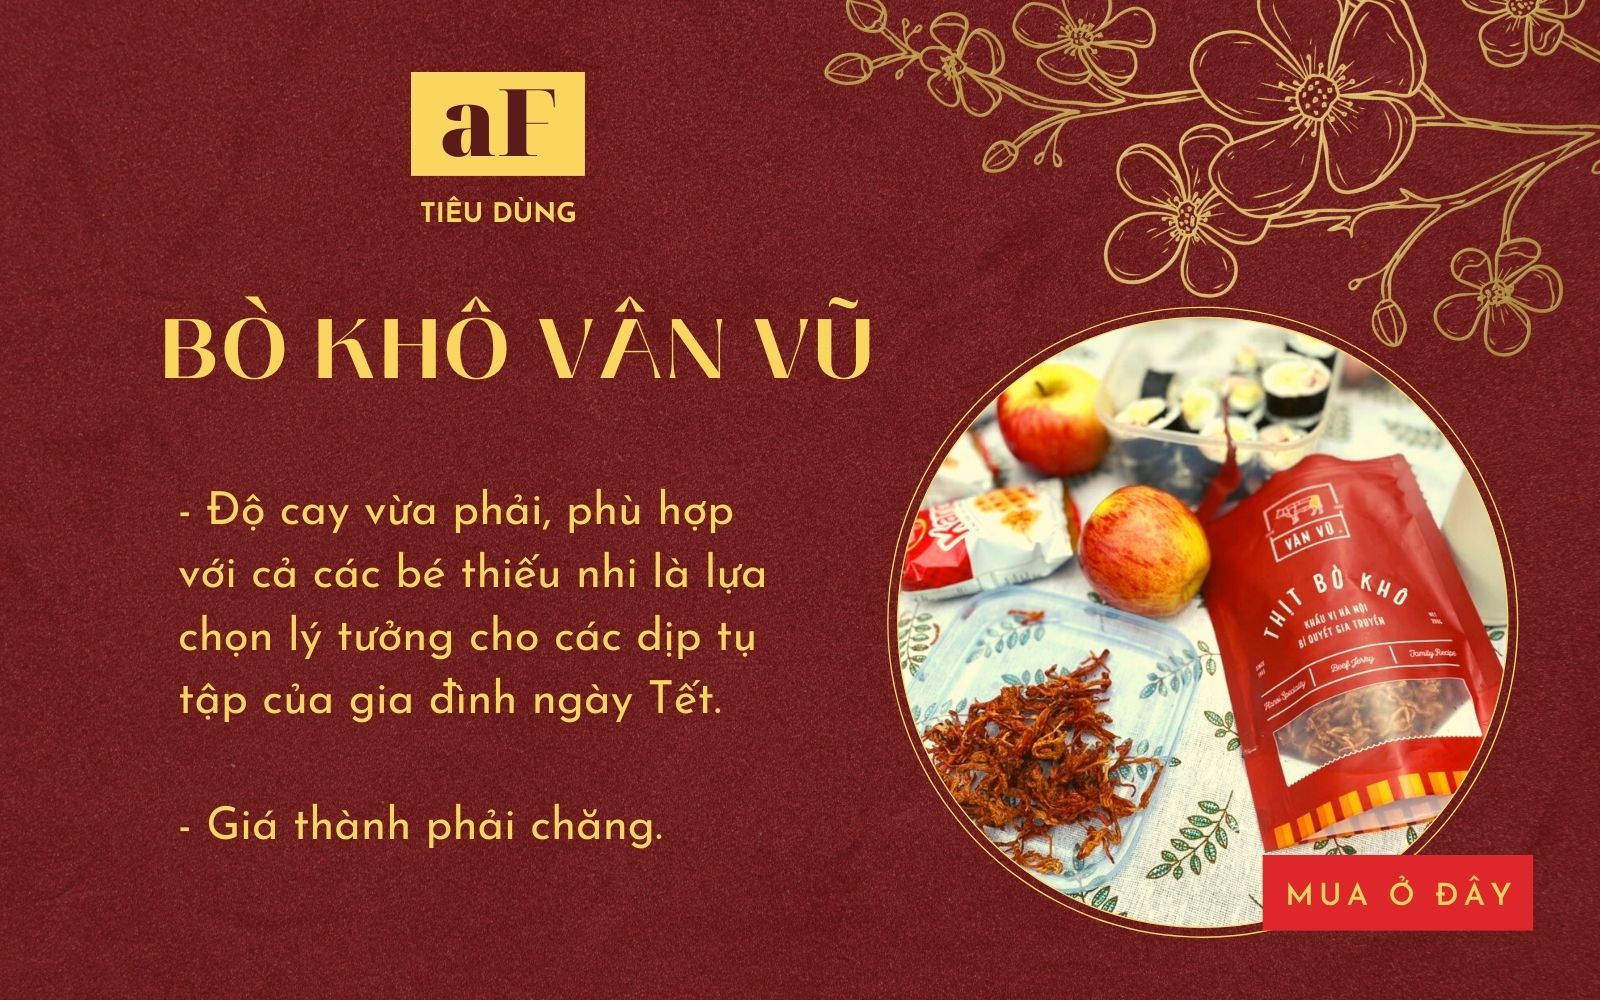 7 địa chỉ mua thịt bò khô ngon tại Hà Nội và Sài Gòn mua đãi khách Tết ai cũng tấm tắc khen - Ảnh 3.